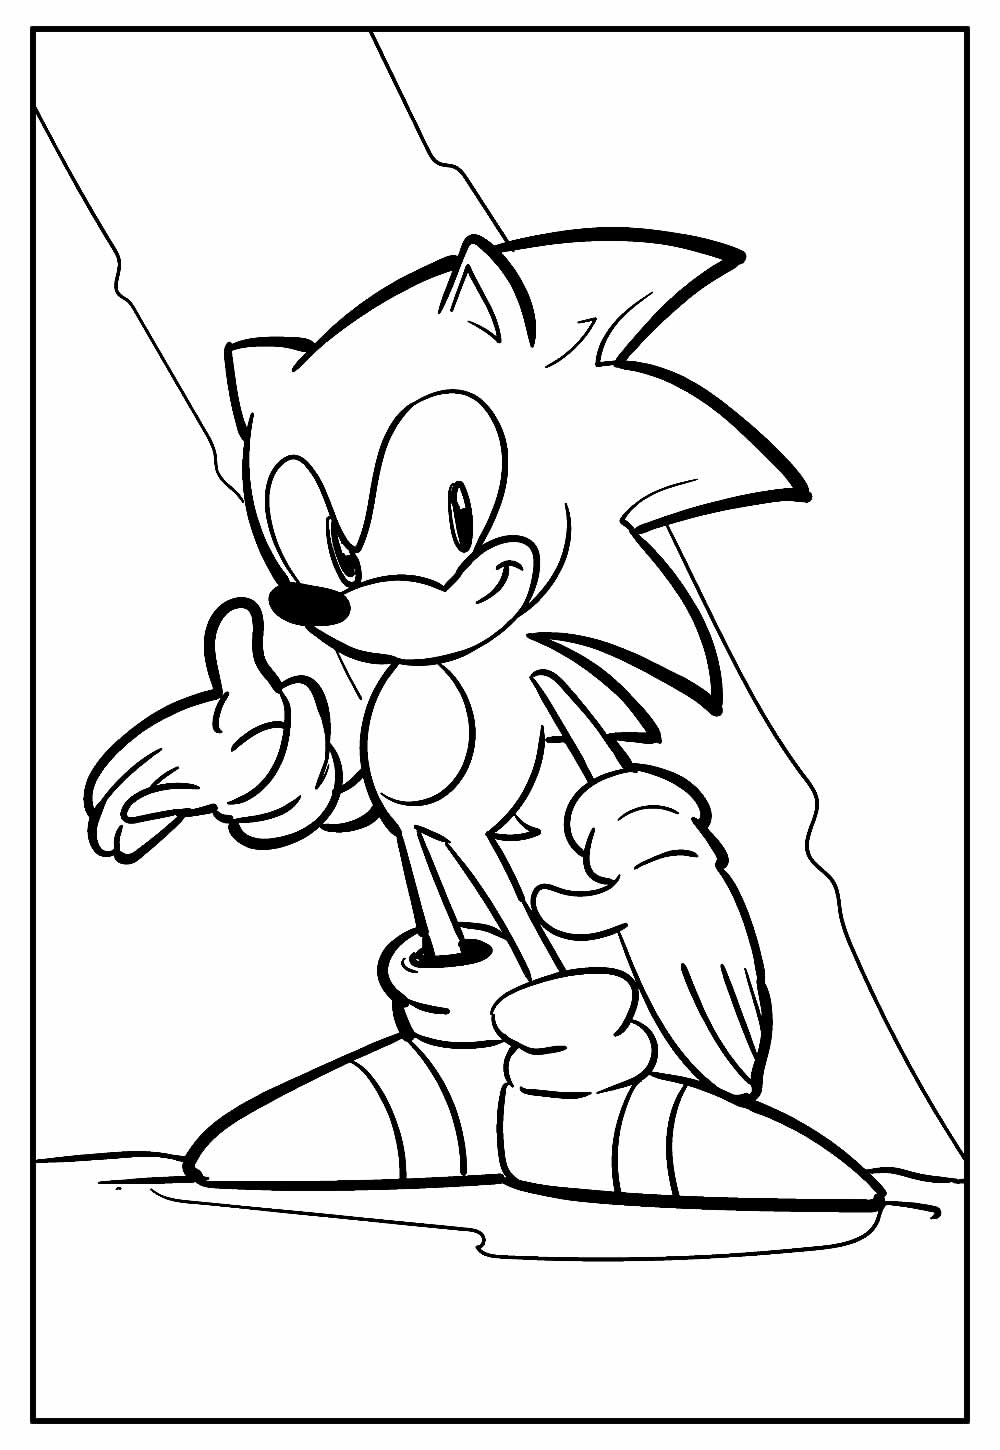 Desenhos do Sonic para imprimir e colorir - Pinte Online